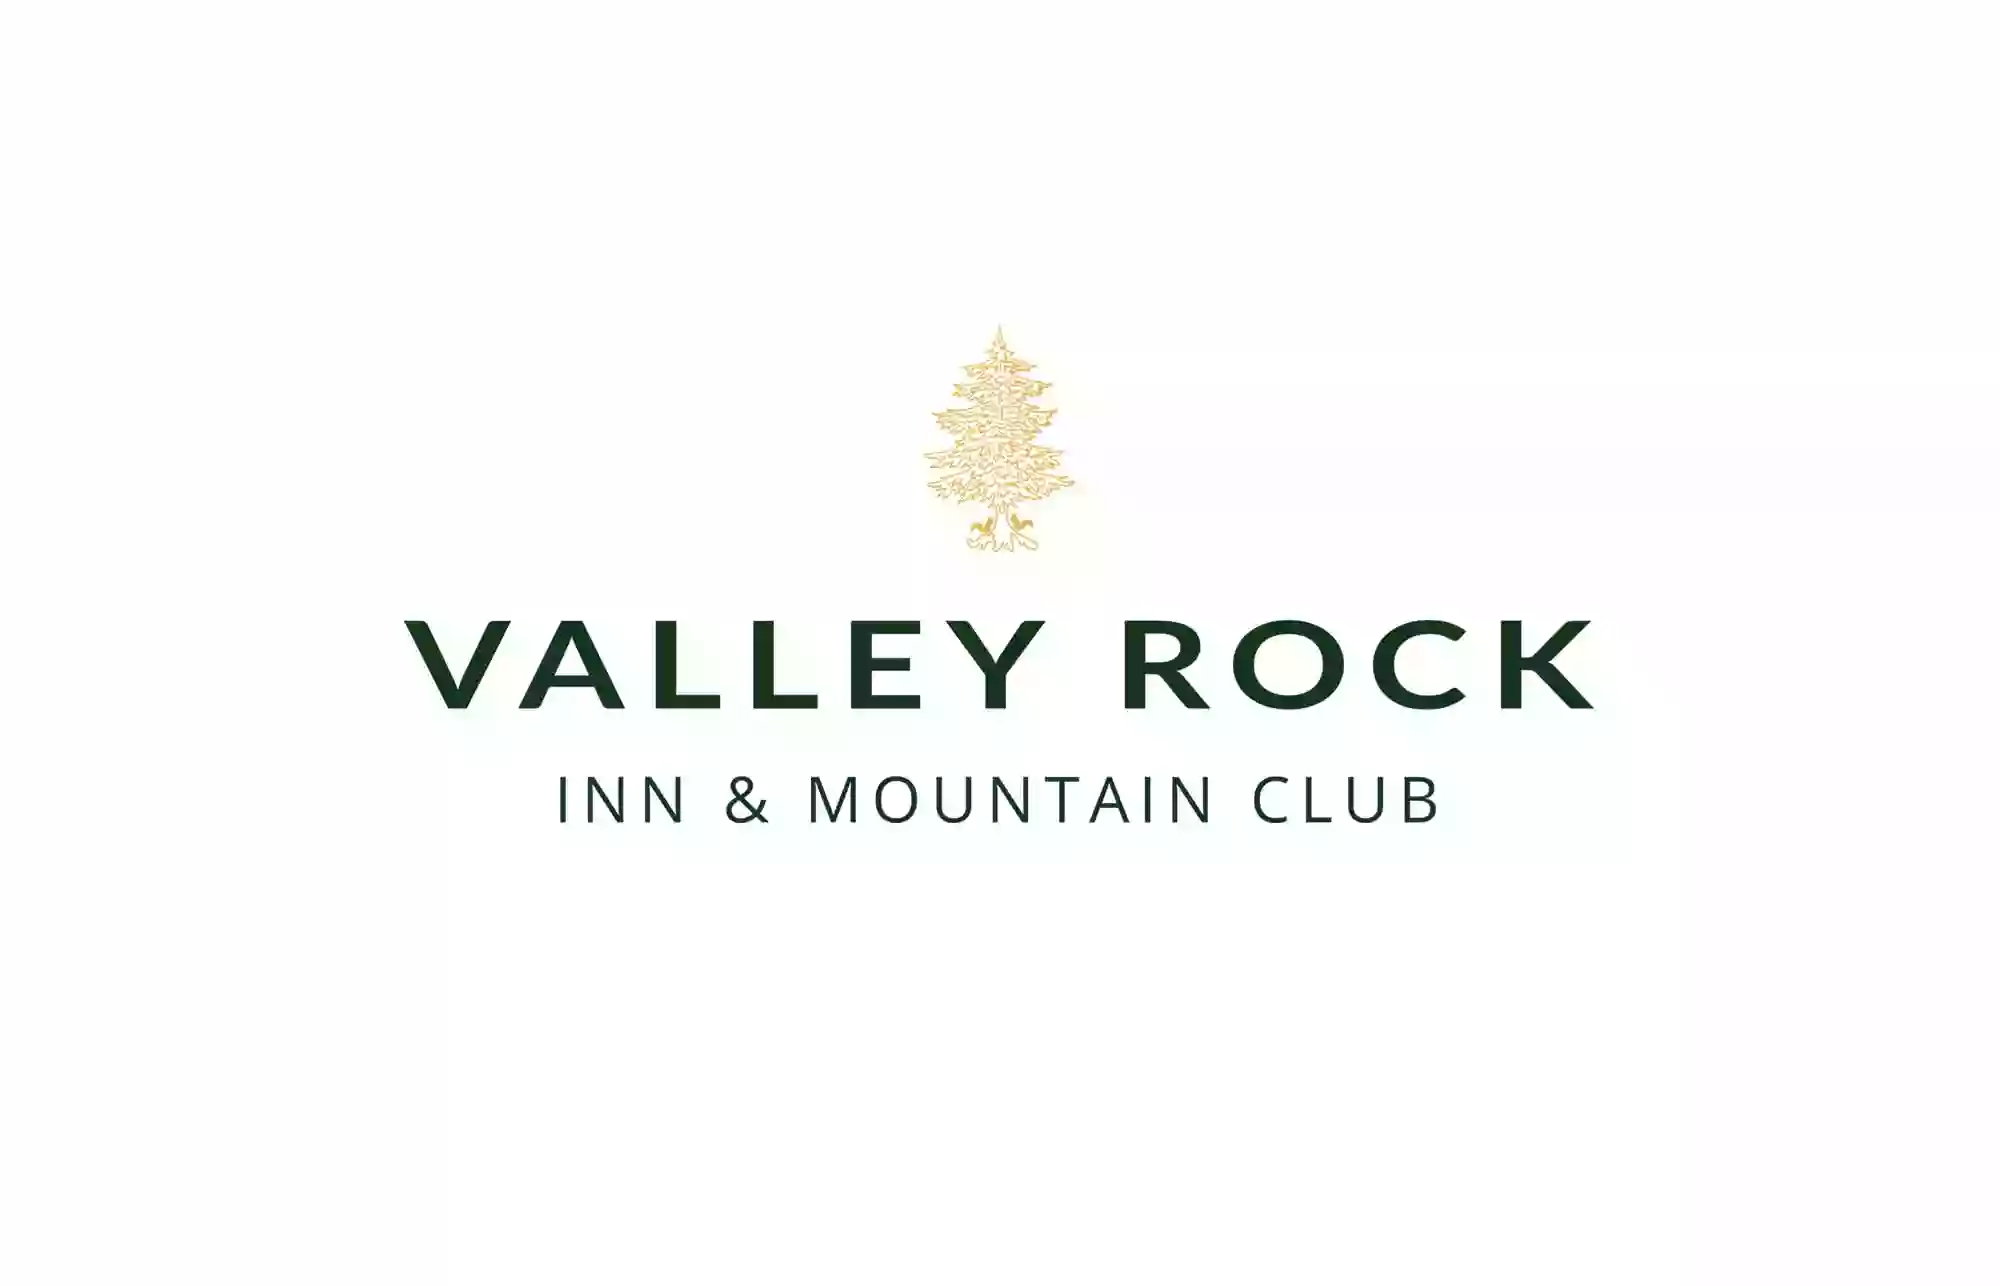 Valley Rock Inn & Mountain Club